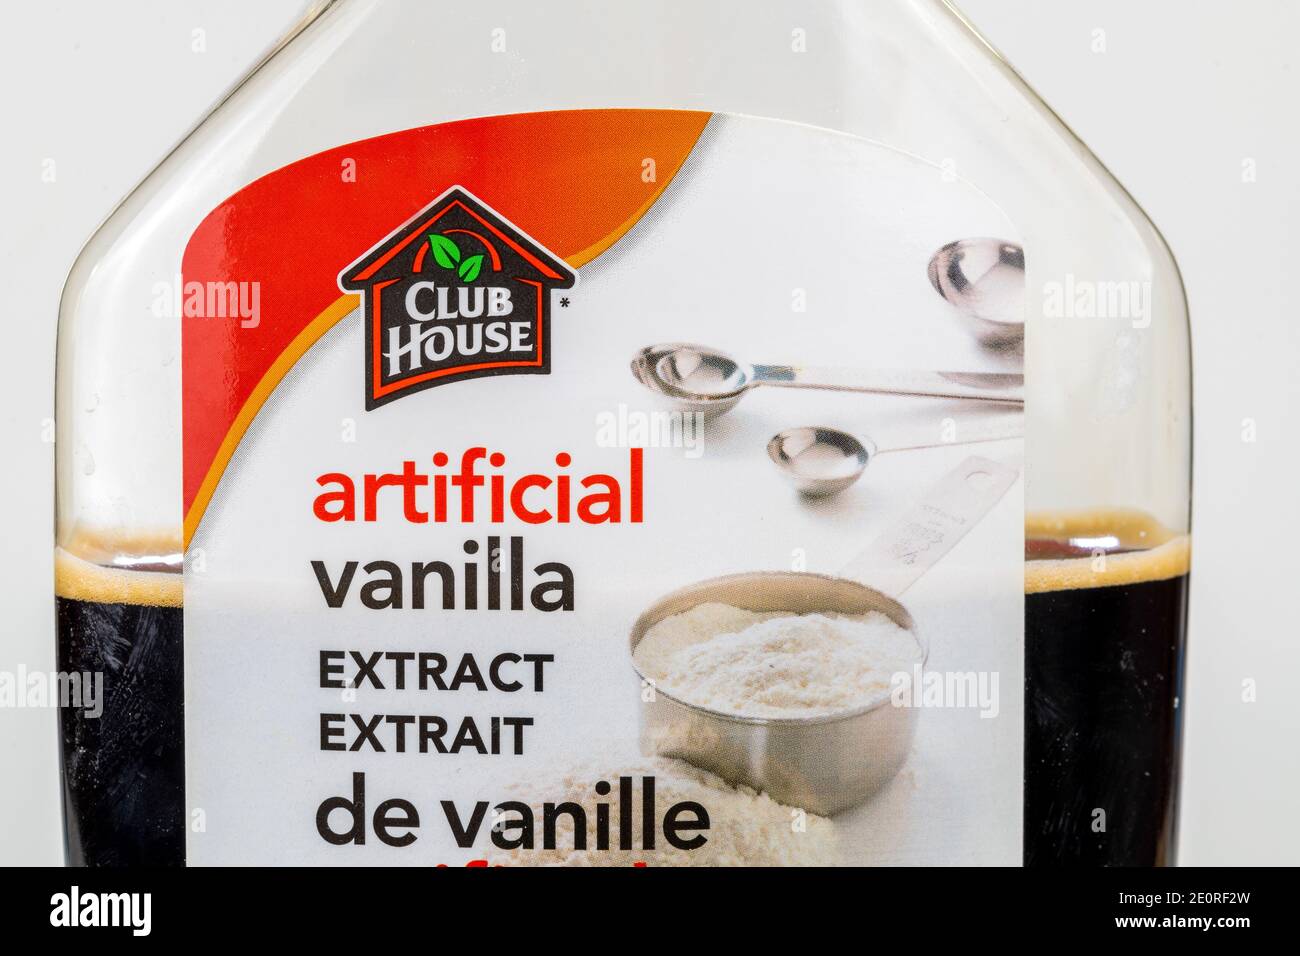 In questa illustrazione, una vista frontale di un'etichetta Club House in una bottiglia di estratto artificiale di vaniglia Foto Stock